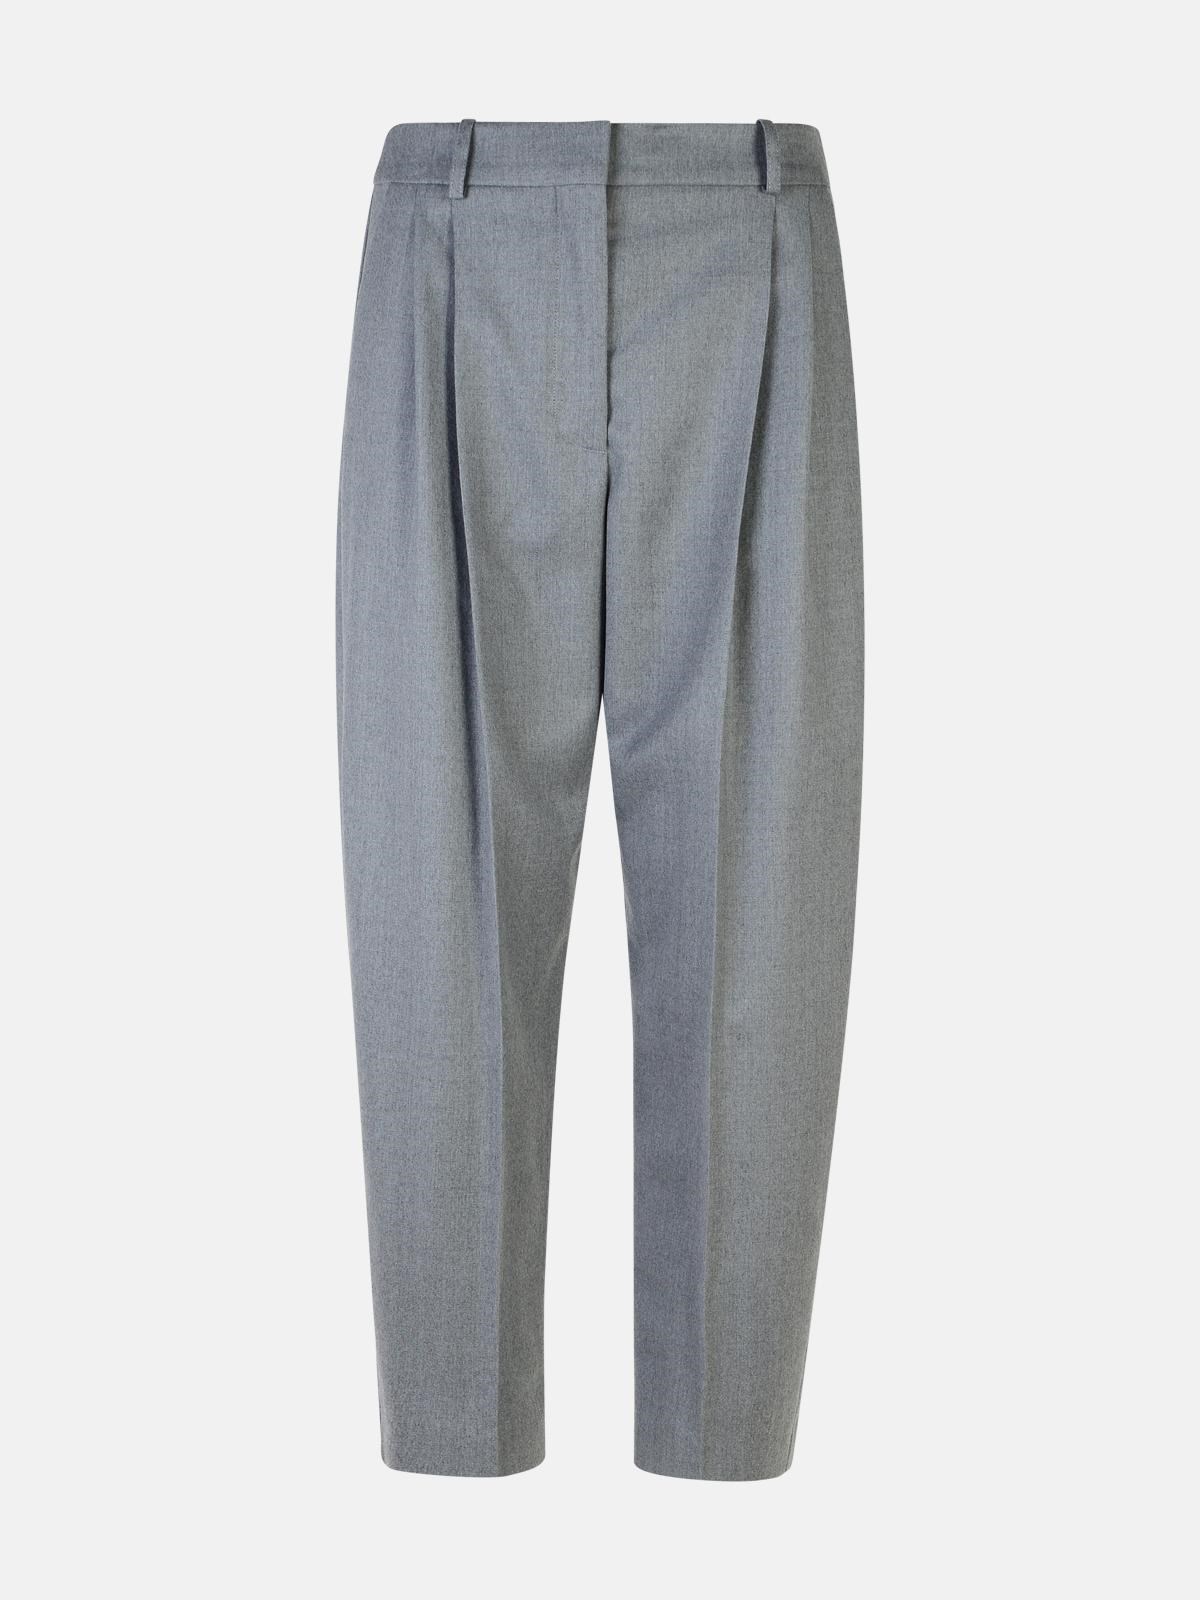 Stella Mccartney Grey Wool Trousers In Gray